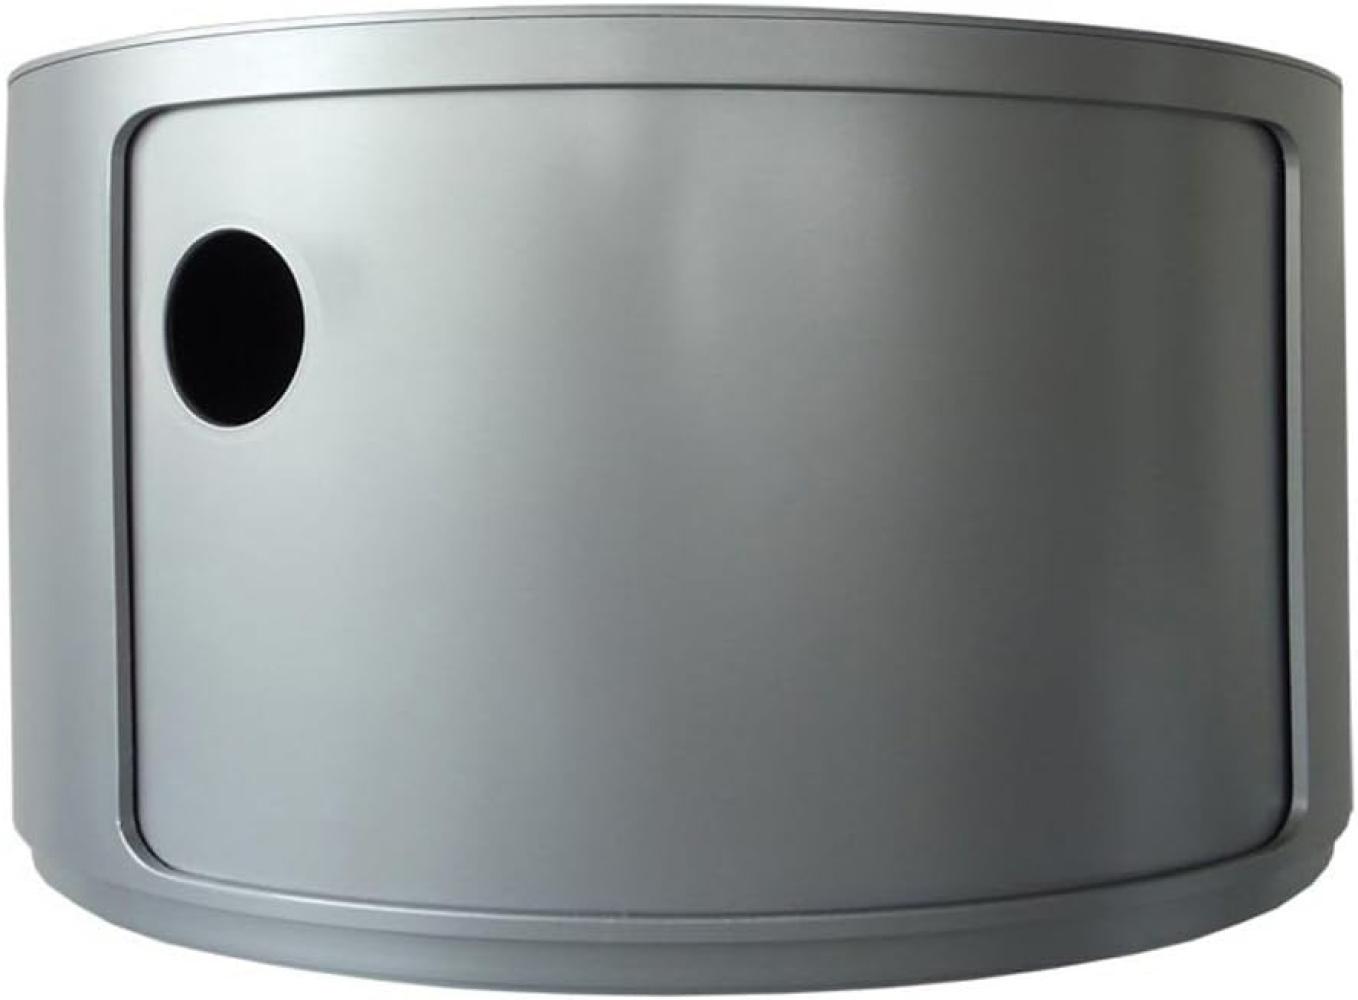 Kartell 4953SI Baukastenelement Componibili rund undurchsichtig Durchmesser 42 x 23,5 cm ABS, silber Bild 1